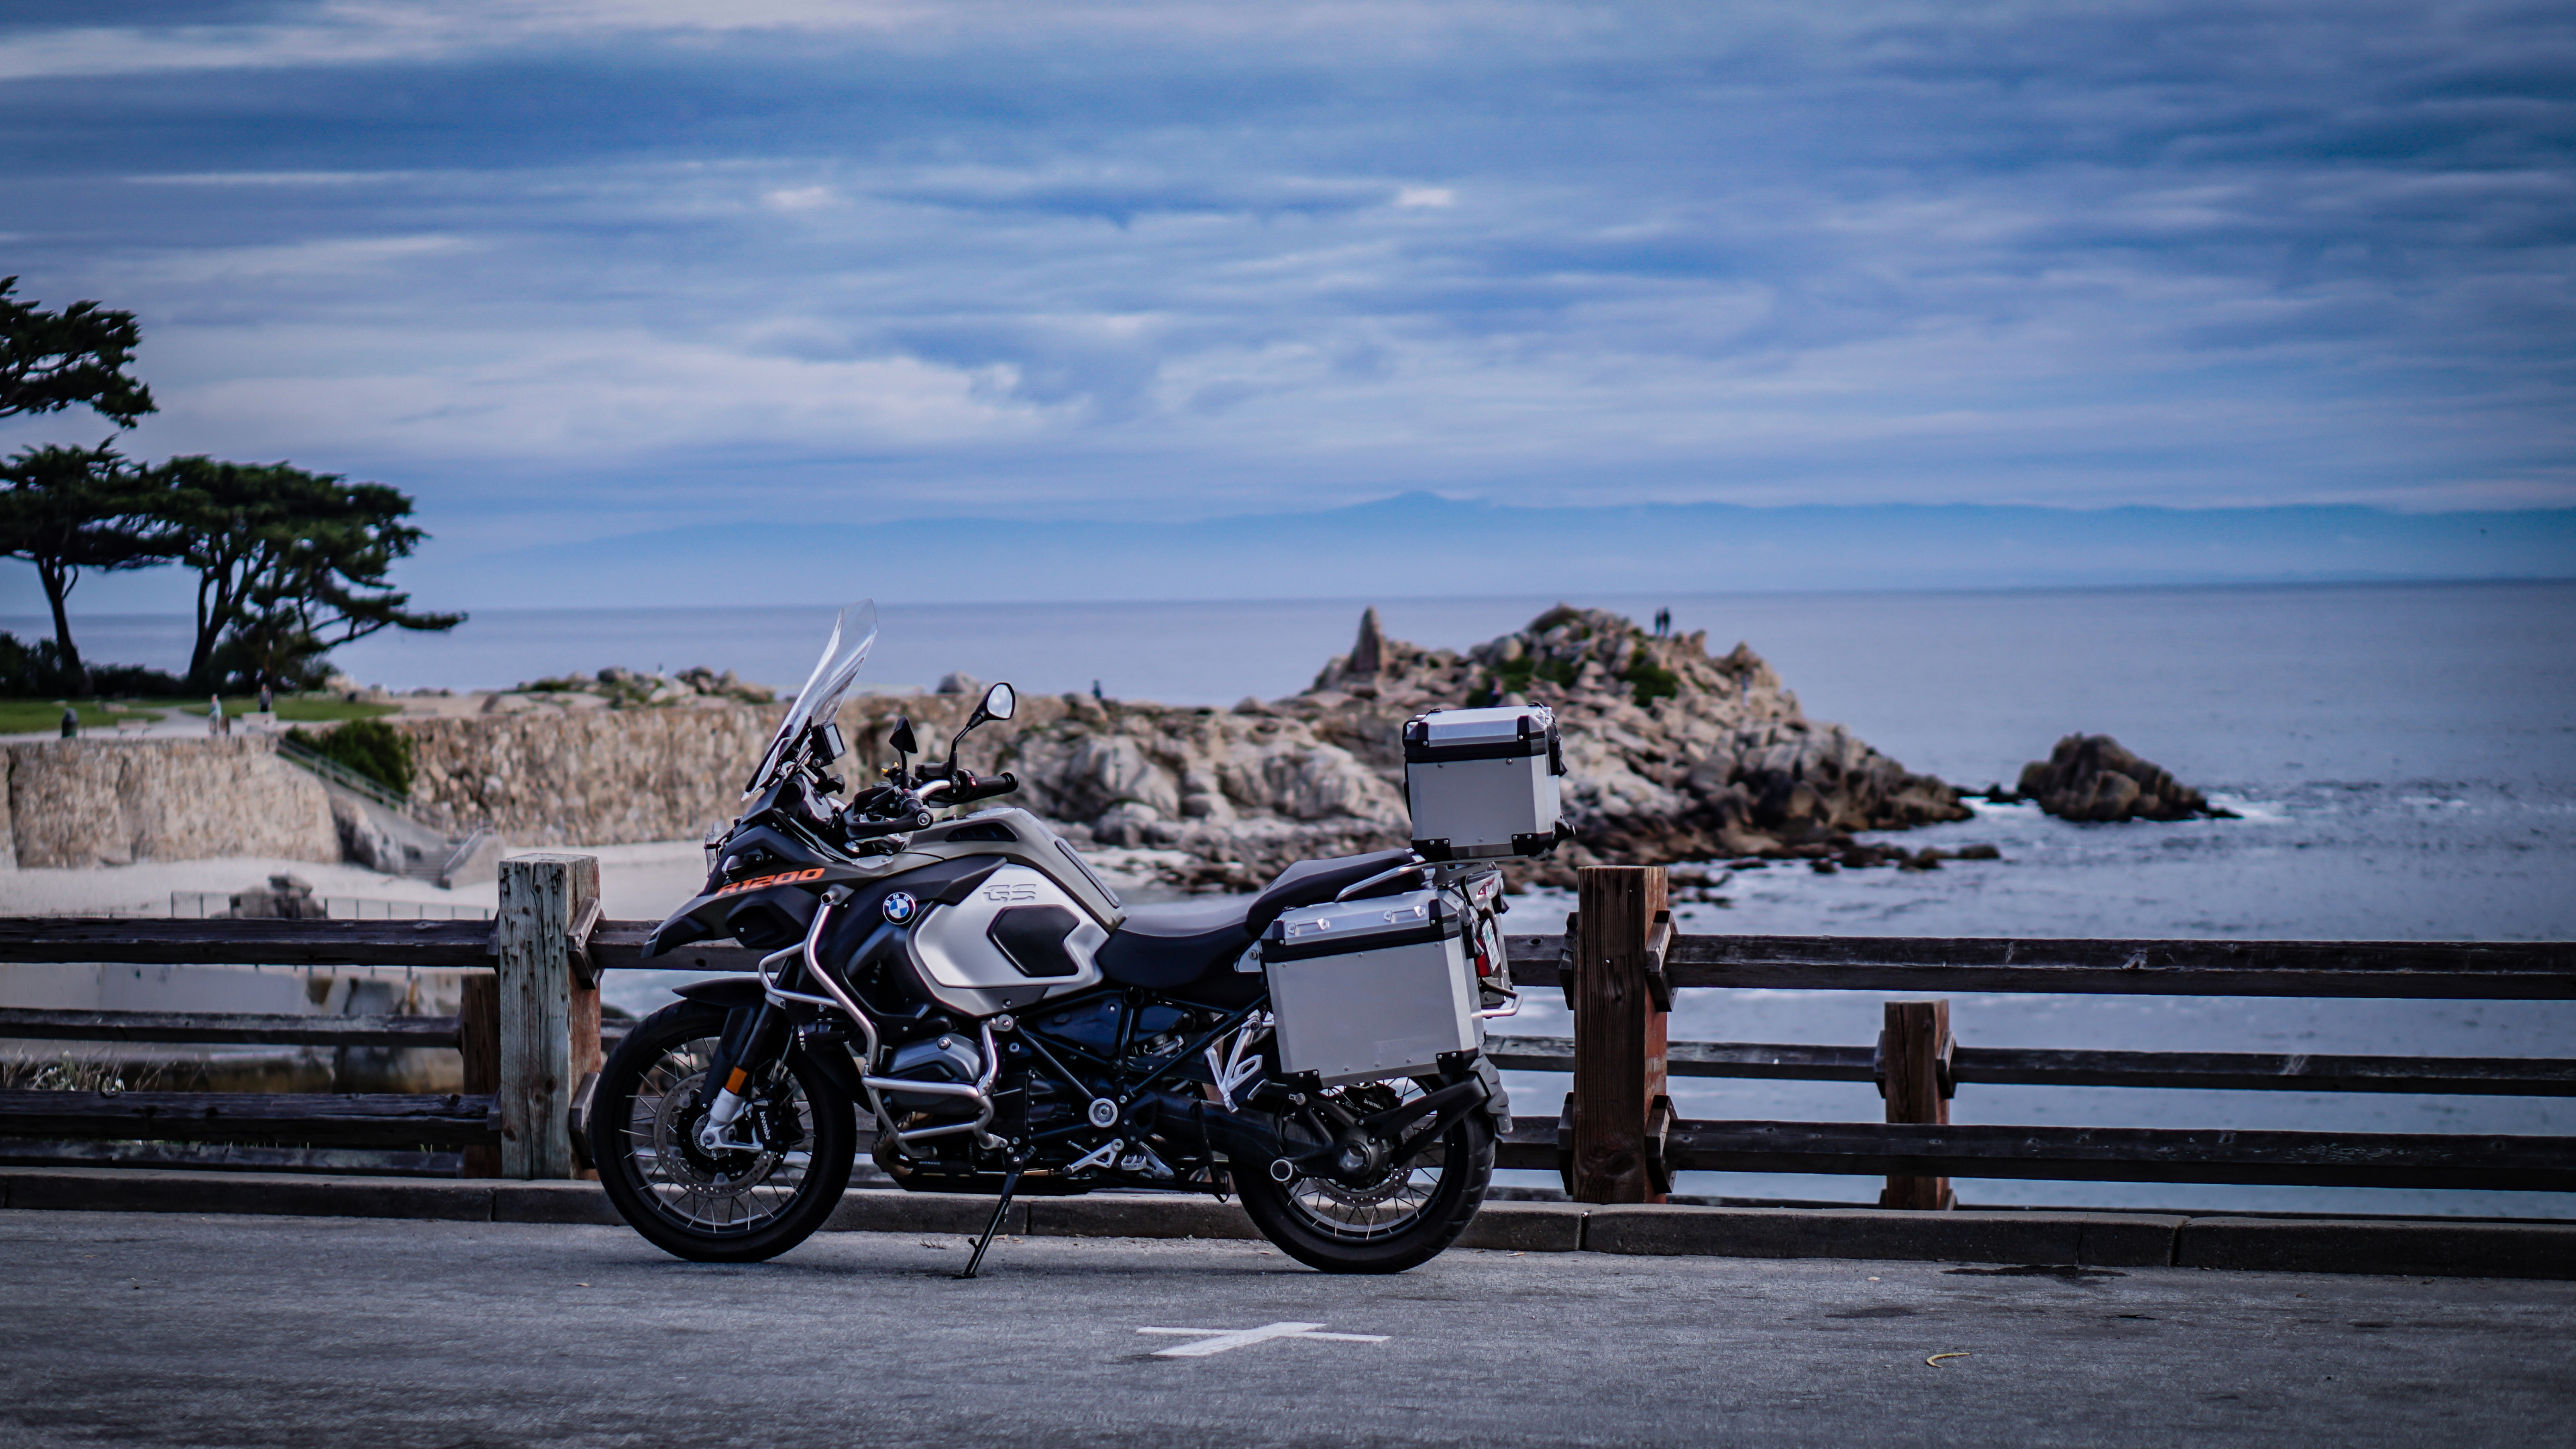 Motocicleta Negra y Plateada Estacionada en un Muelle de Madera Marrón Durante el Día. Wallpaper in 3840x2160 Resolution